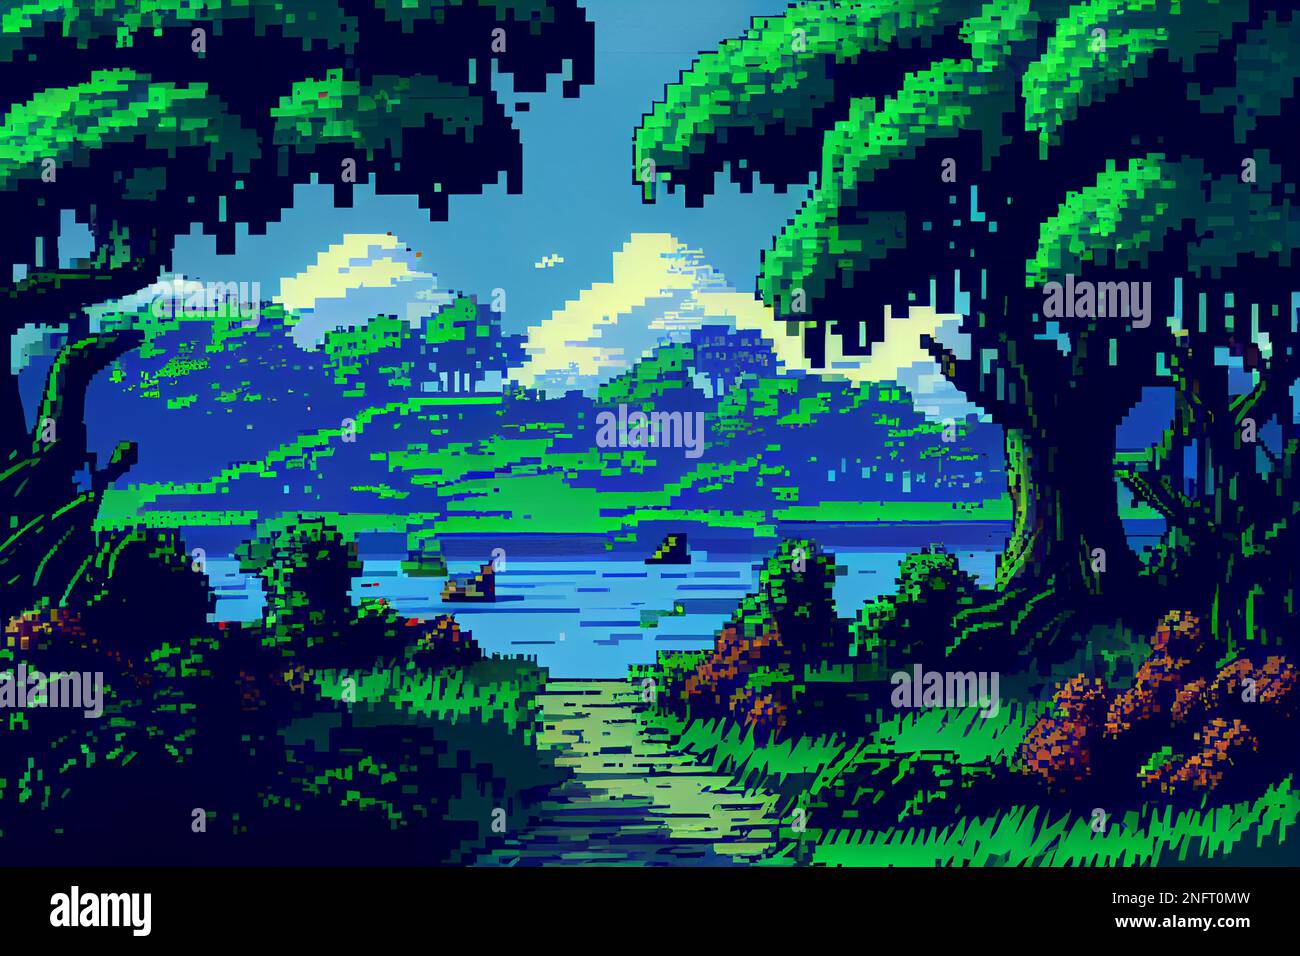 Videospielhintergrund mit Bergen und Wäldern in 16-Bit-Pixeln. Retro-Video-Arcade-Spiel Naturort mit Pixel Art Mountain Hills, sn Stockfoto